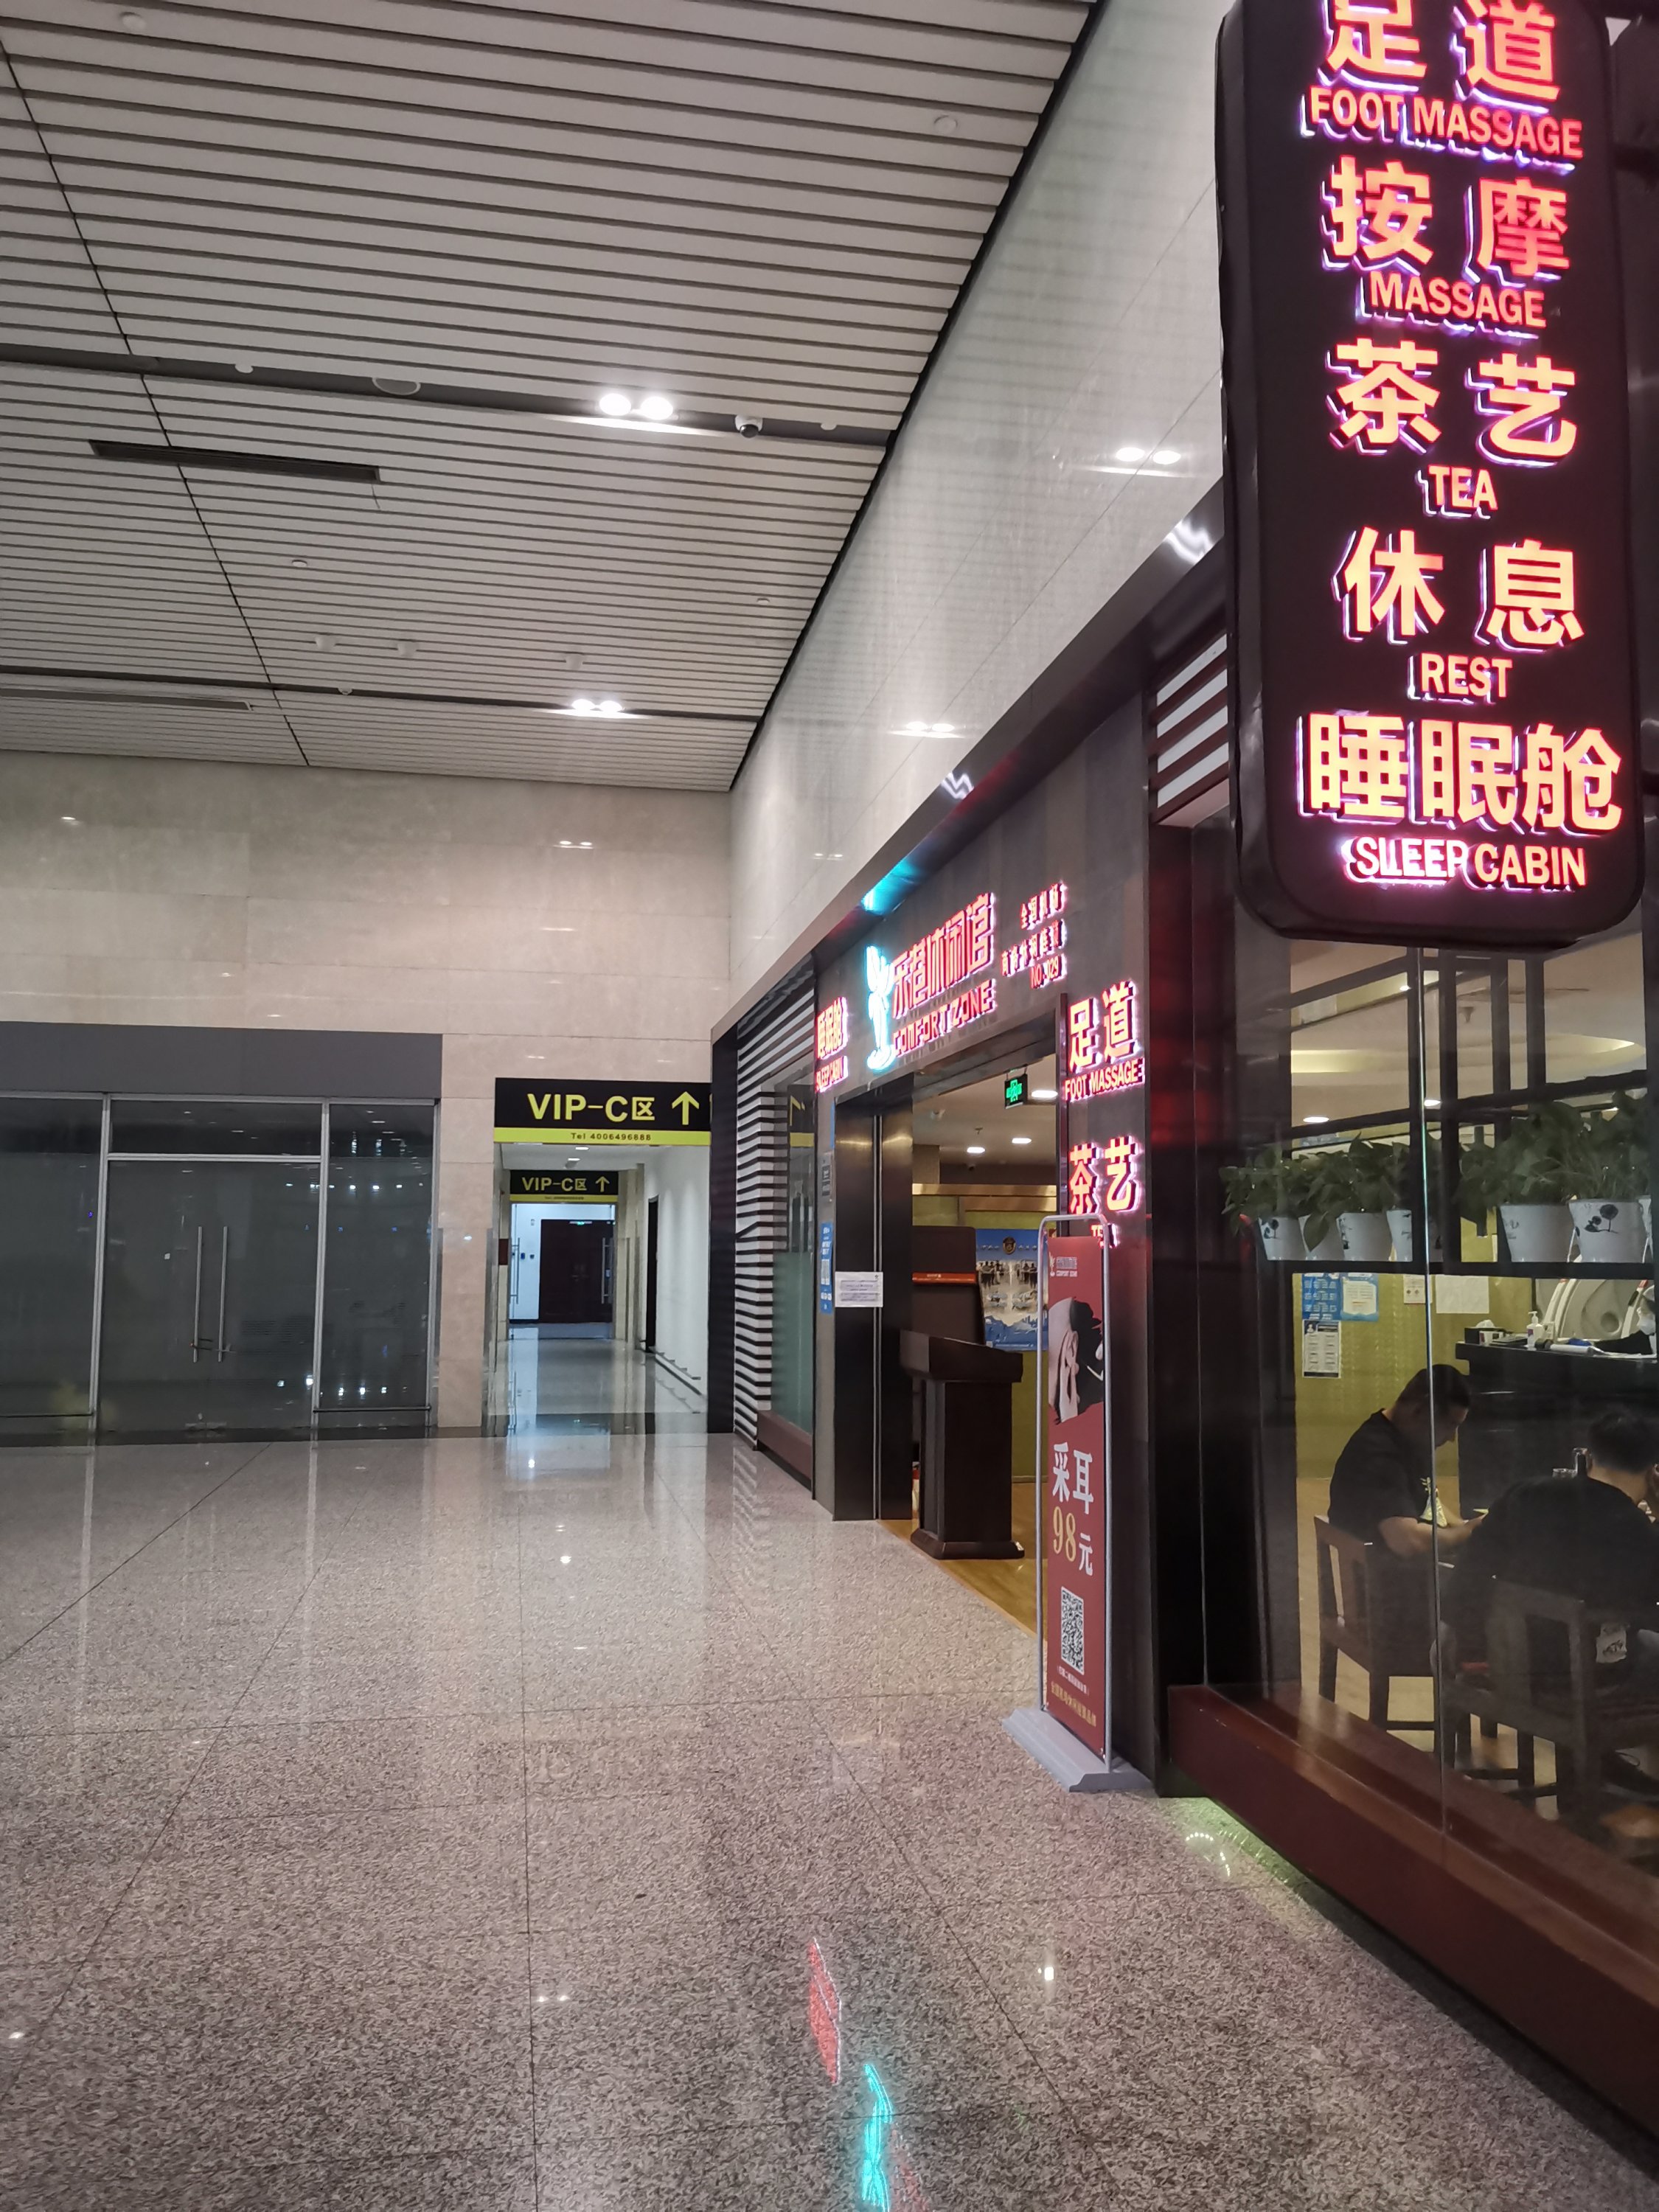 天津机场照片真实图片,天津滨海机场图片(3) - 伤感说说吧